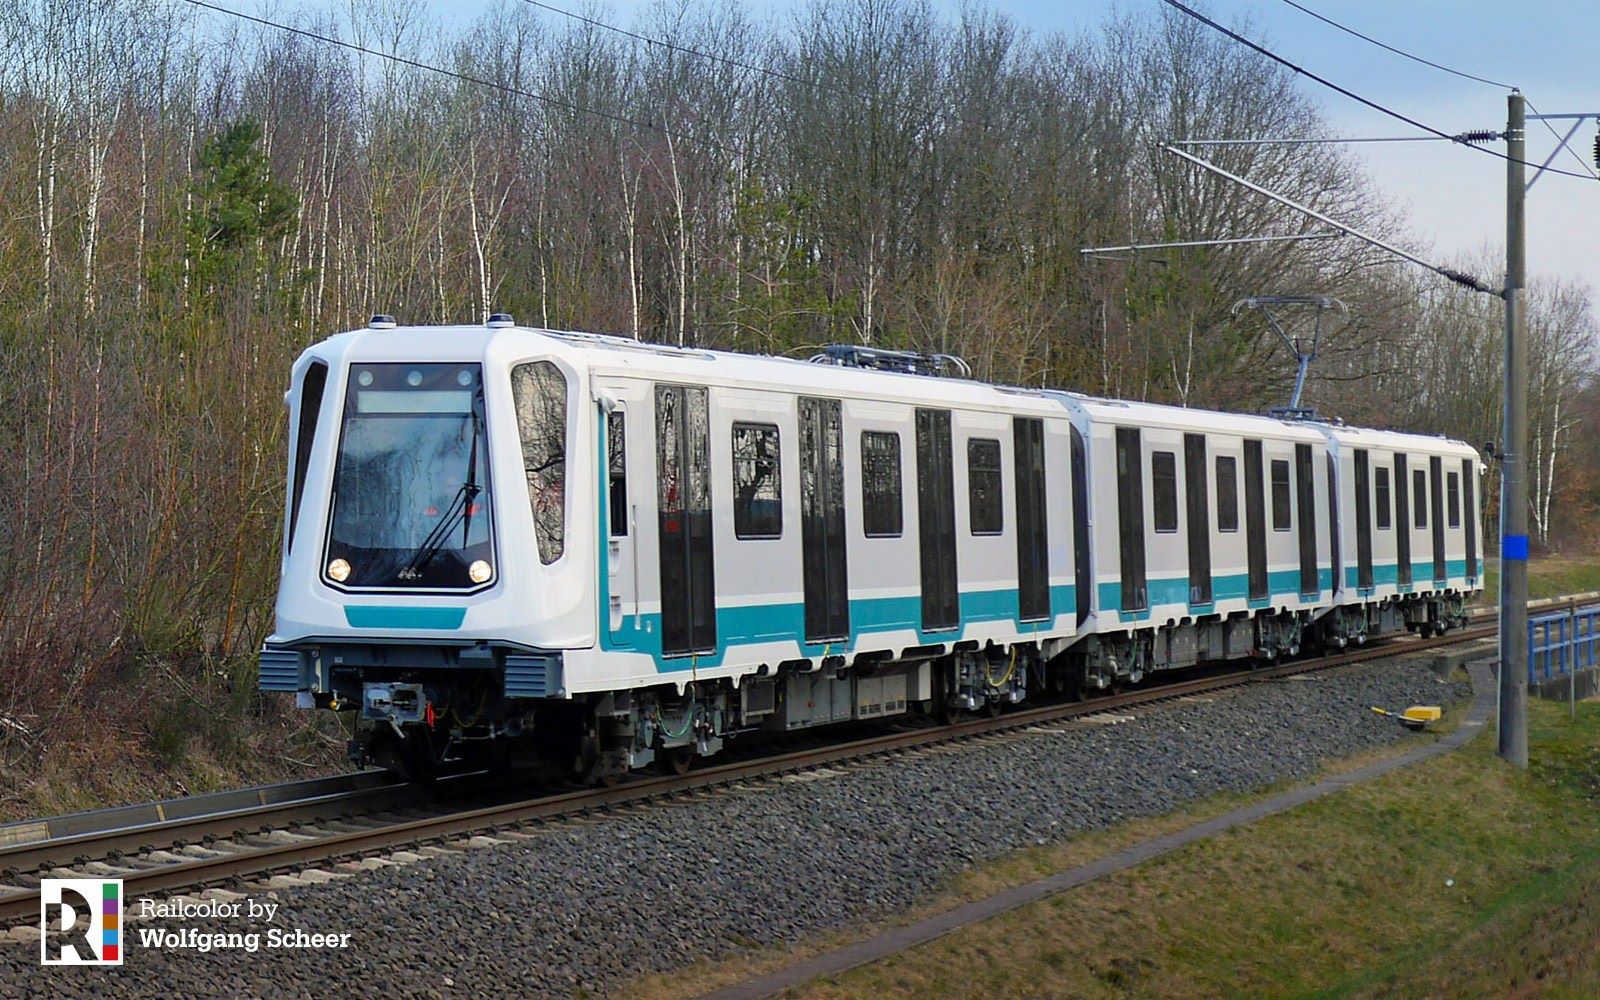 Сименс тества първия влак за софийското метро